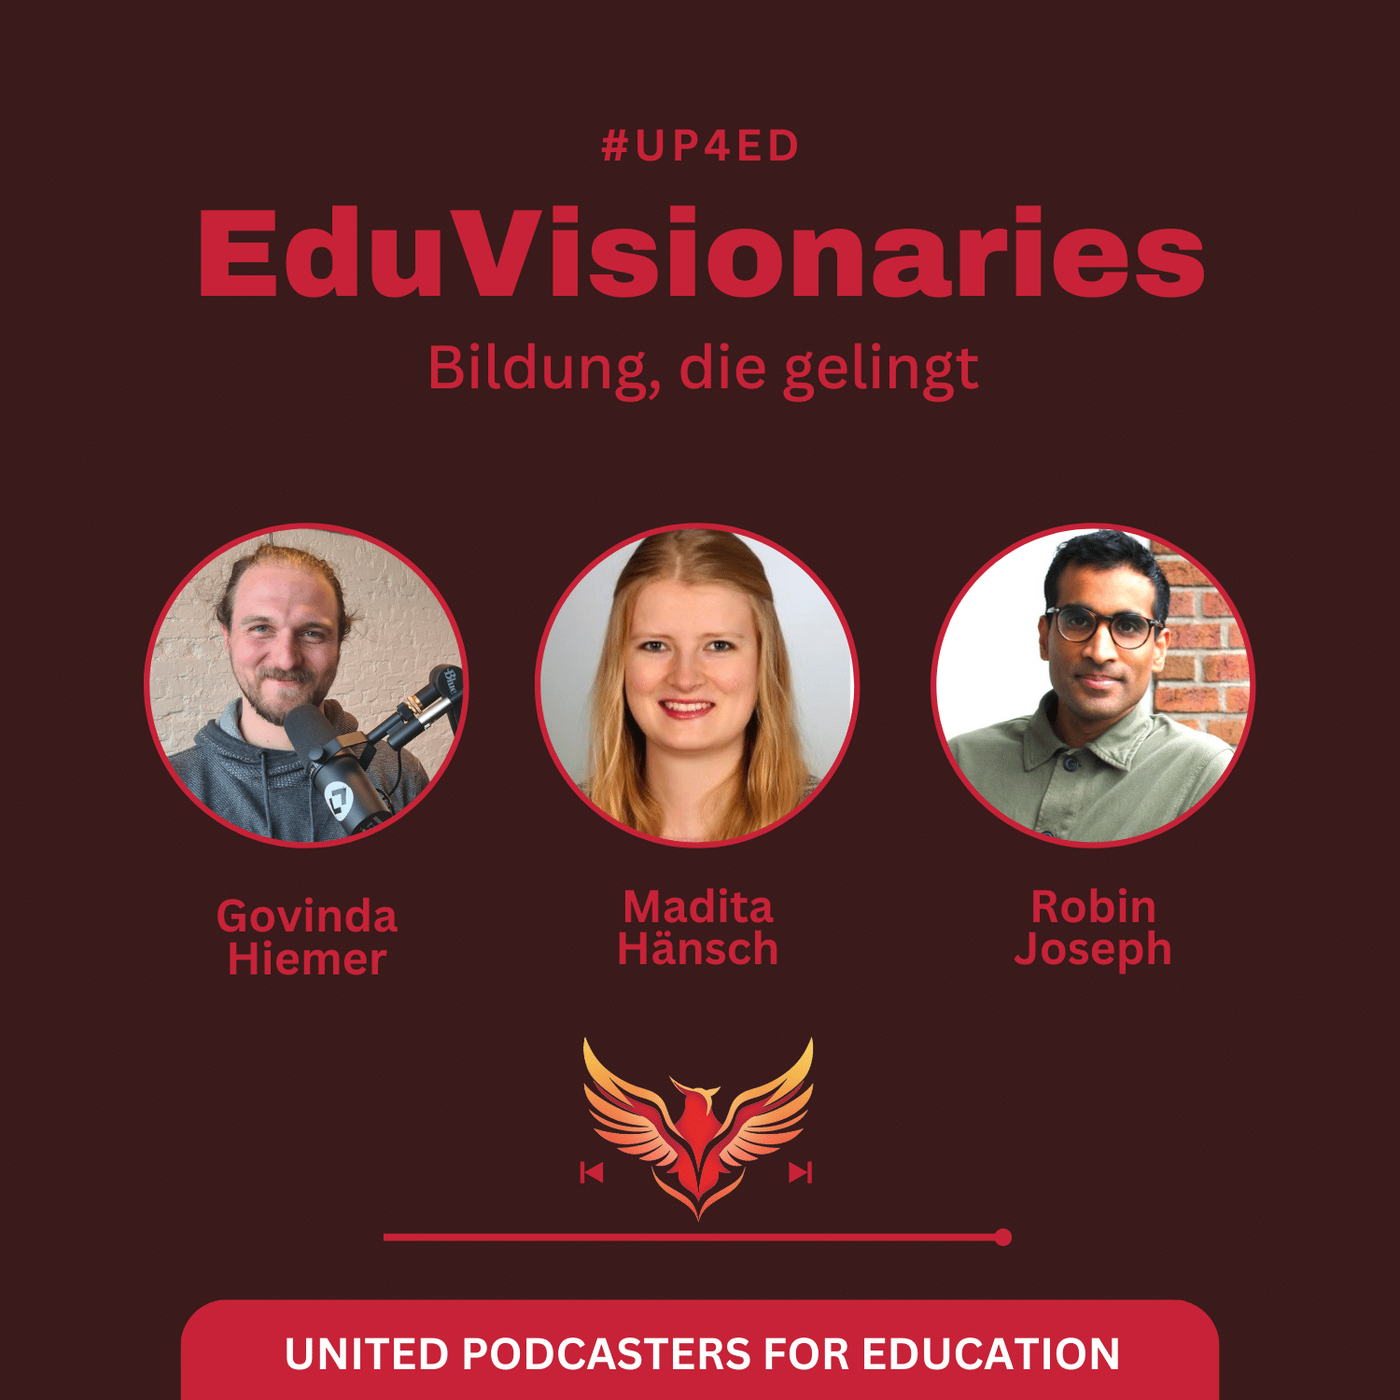 #up4ed - United Podcasters for Education - Unsere Stimmen für gerechte Bildung